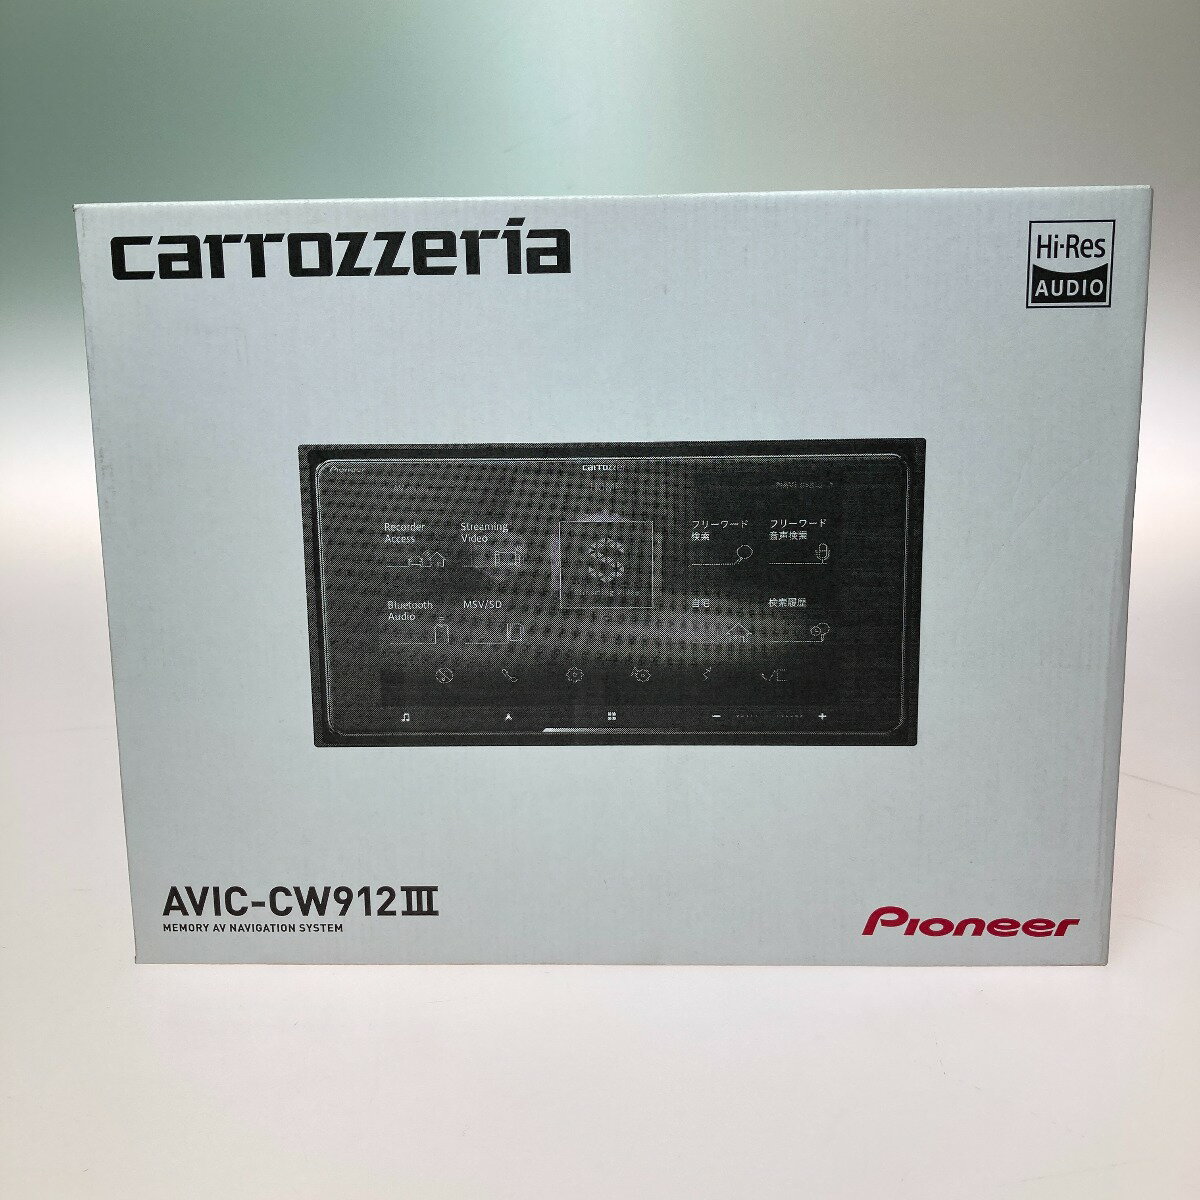 ◎◎【中古】Pioneer パイオニア カロッツェリア サイバーナビ カーナビ 7V型HD AVIC-CW912III Sランク